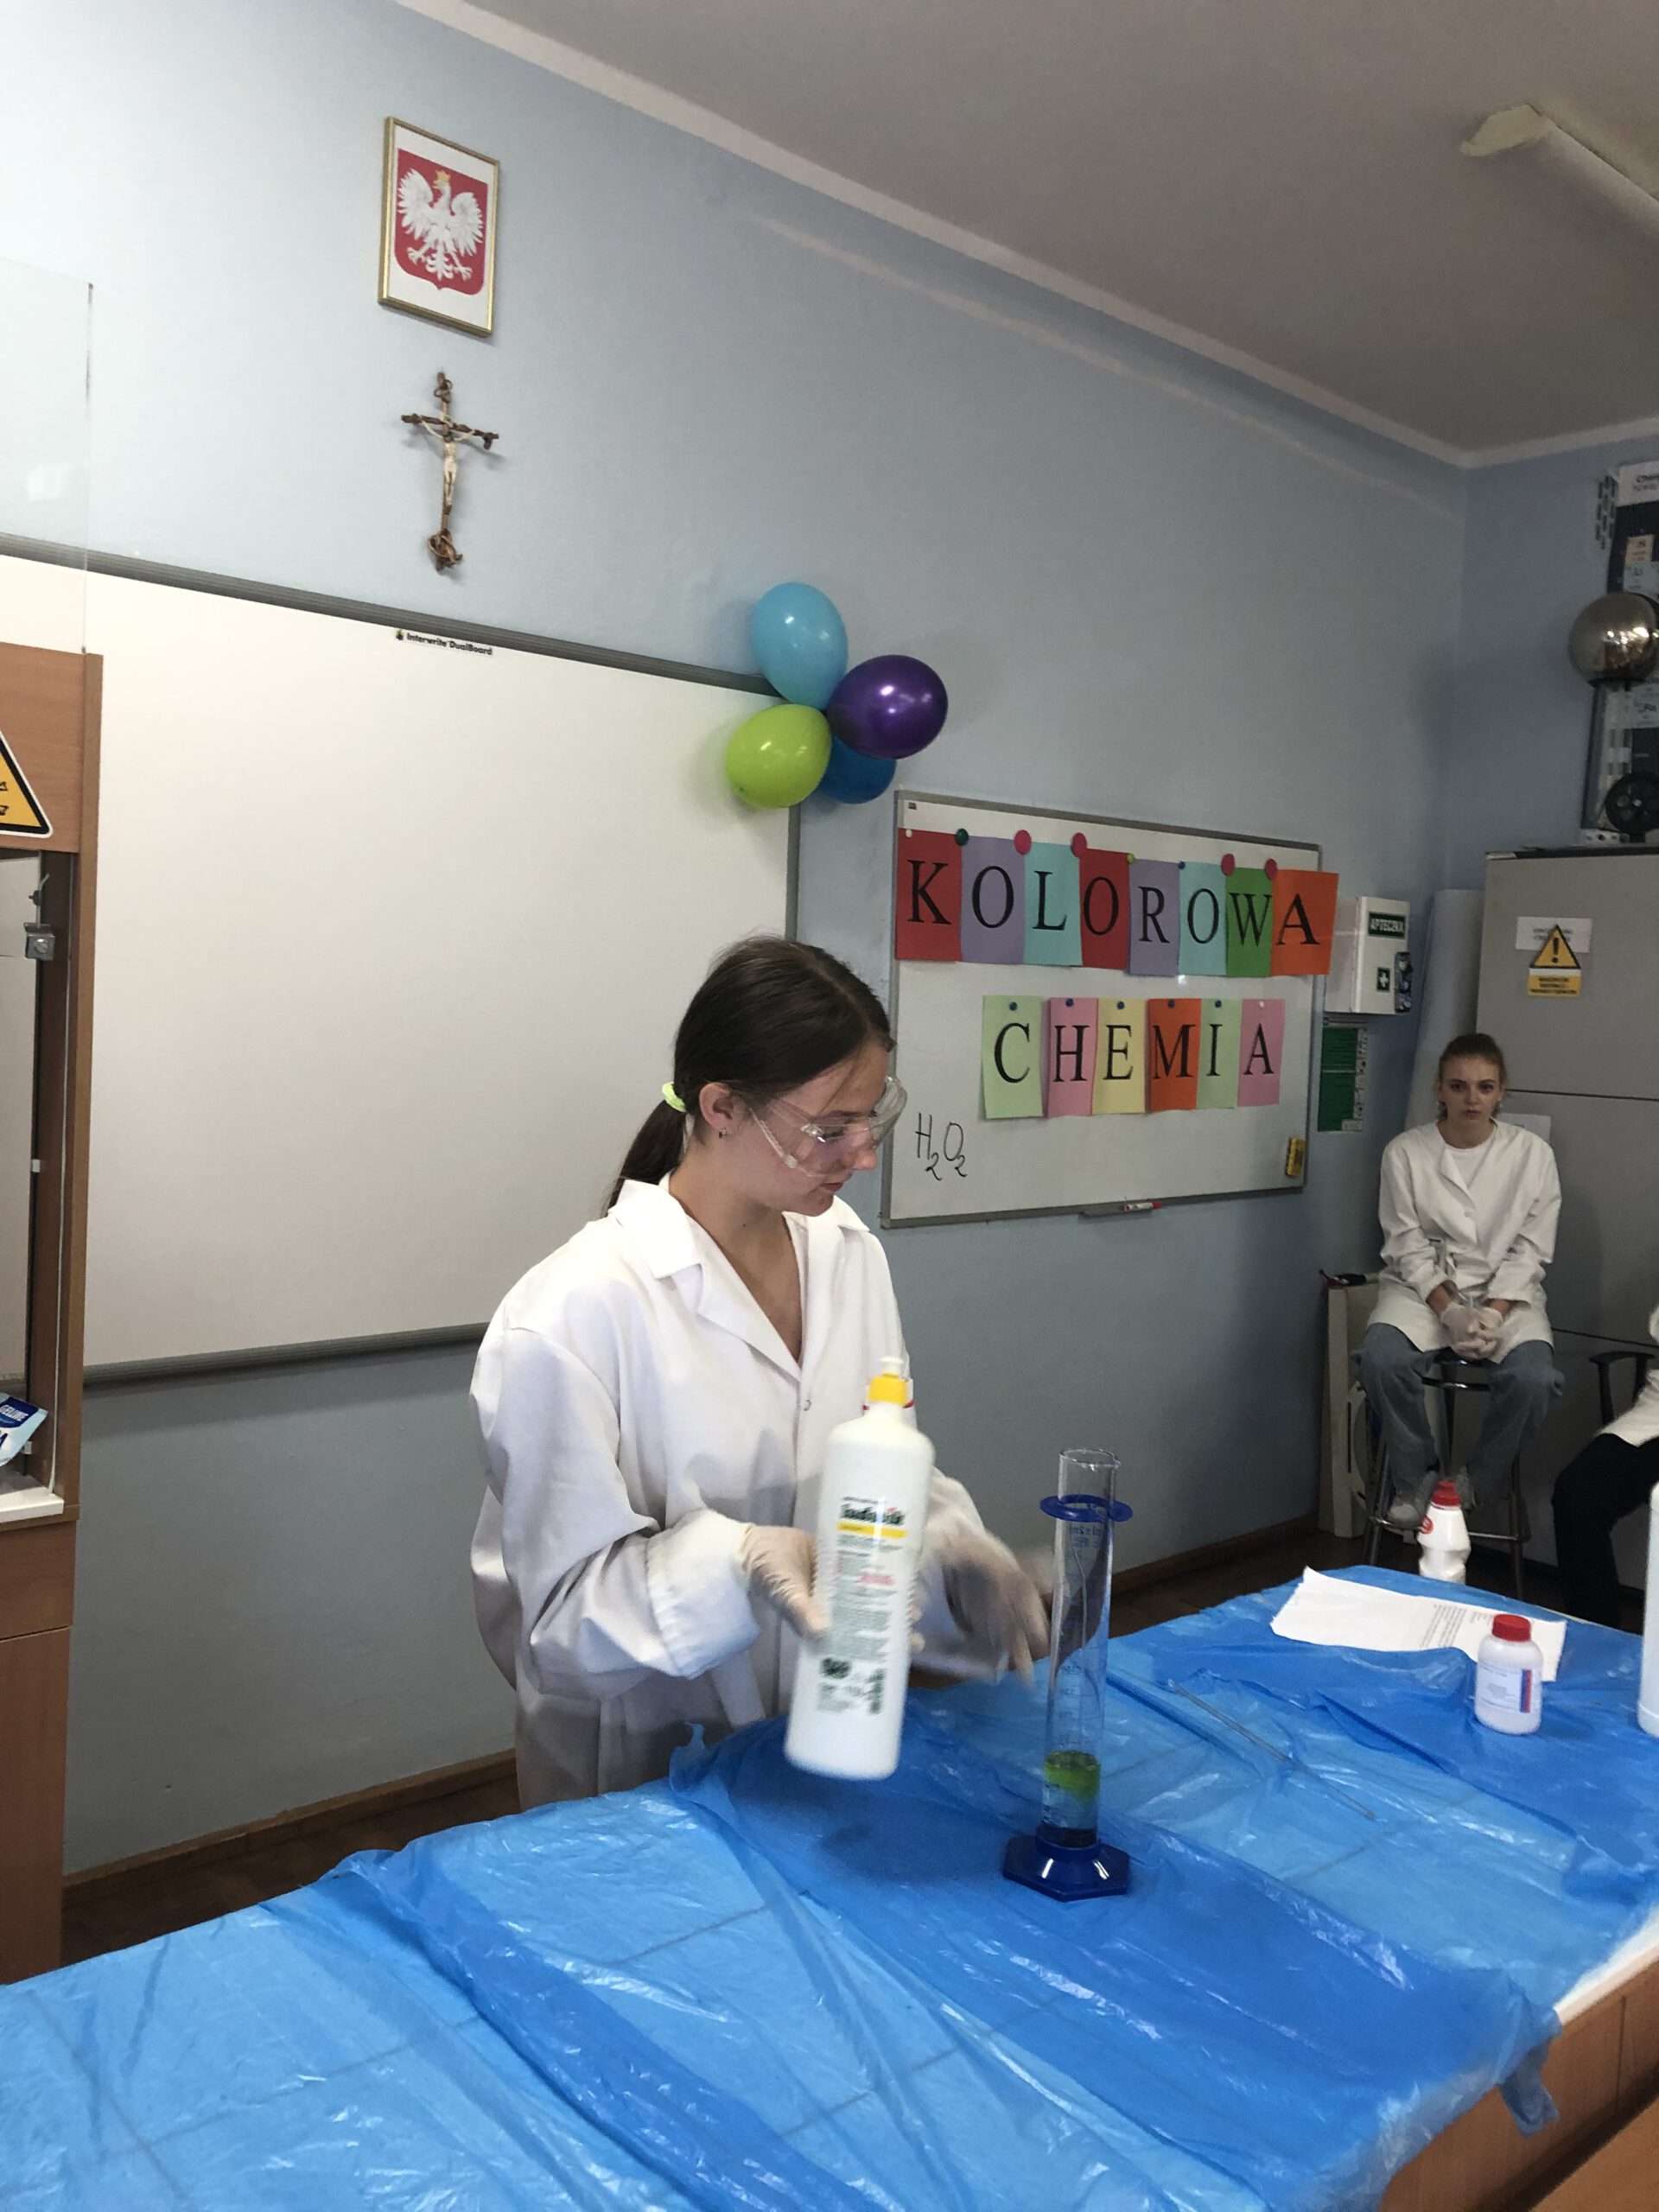 Zuzia Figas przygotowuje eksperyment chemiczny z użyciem płynu do mycia naczyń